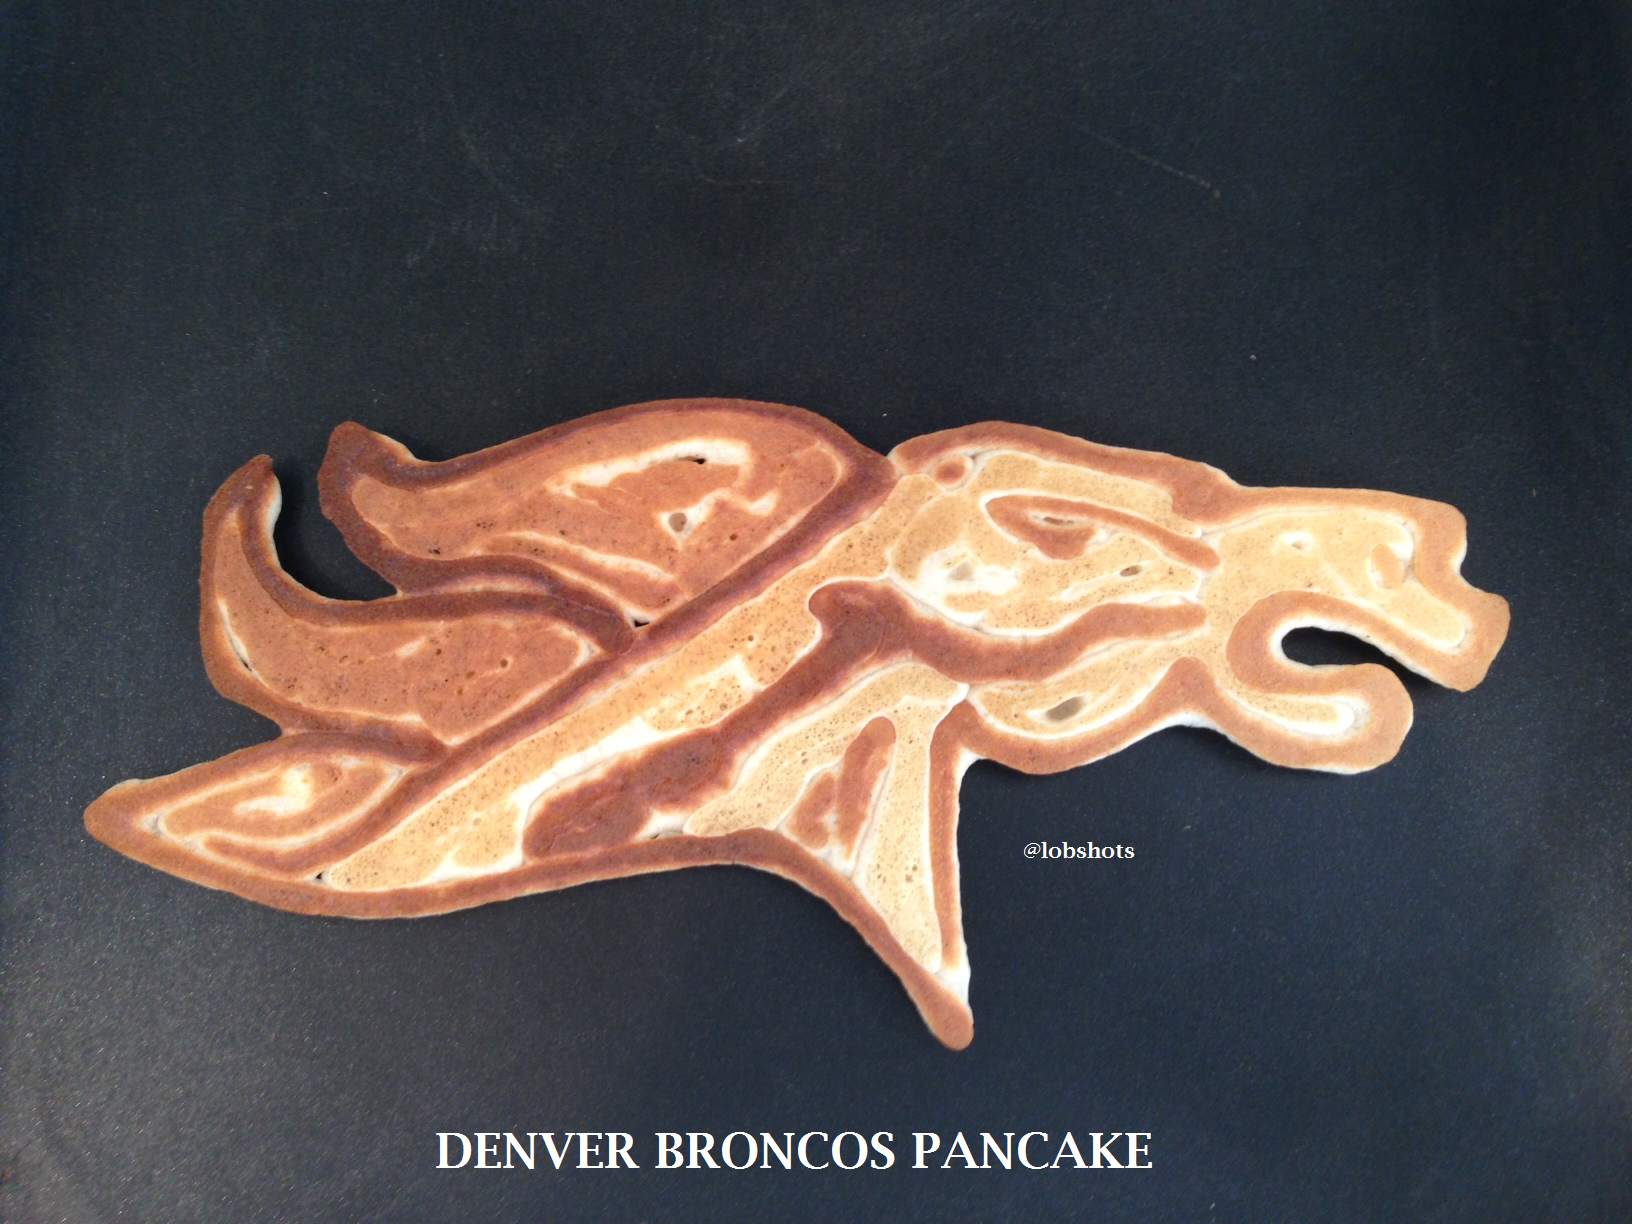 Denver broncos pancake